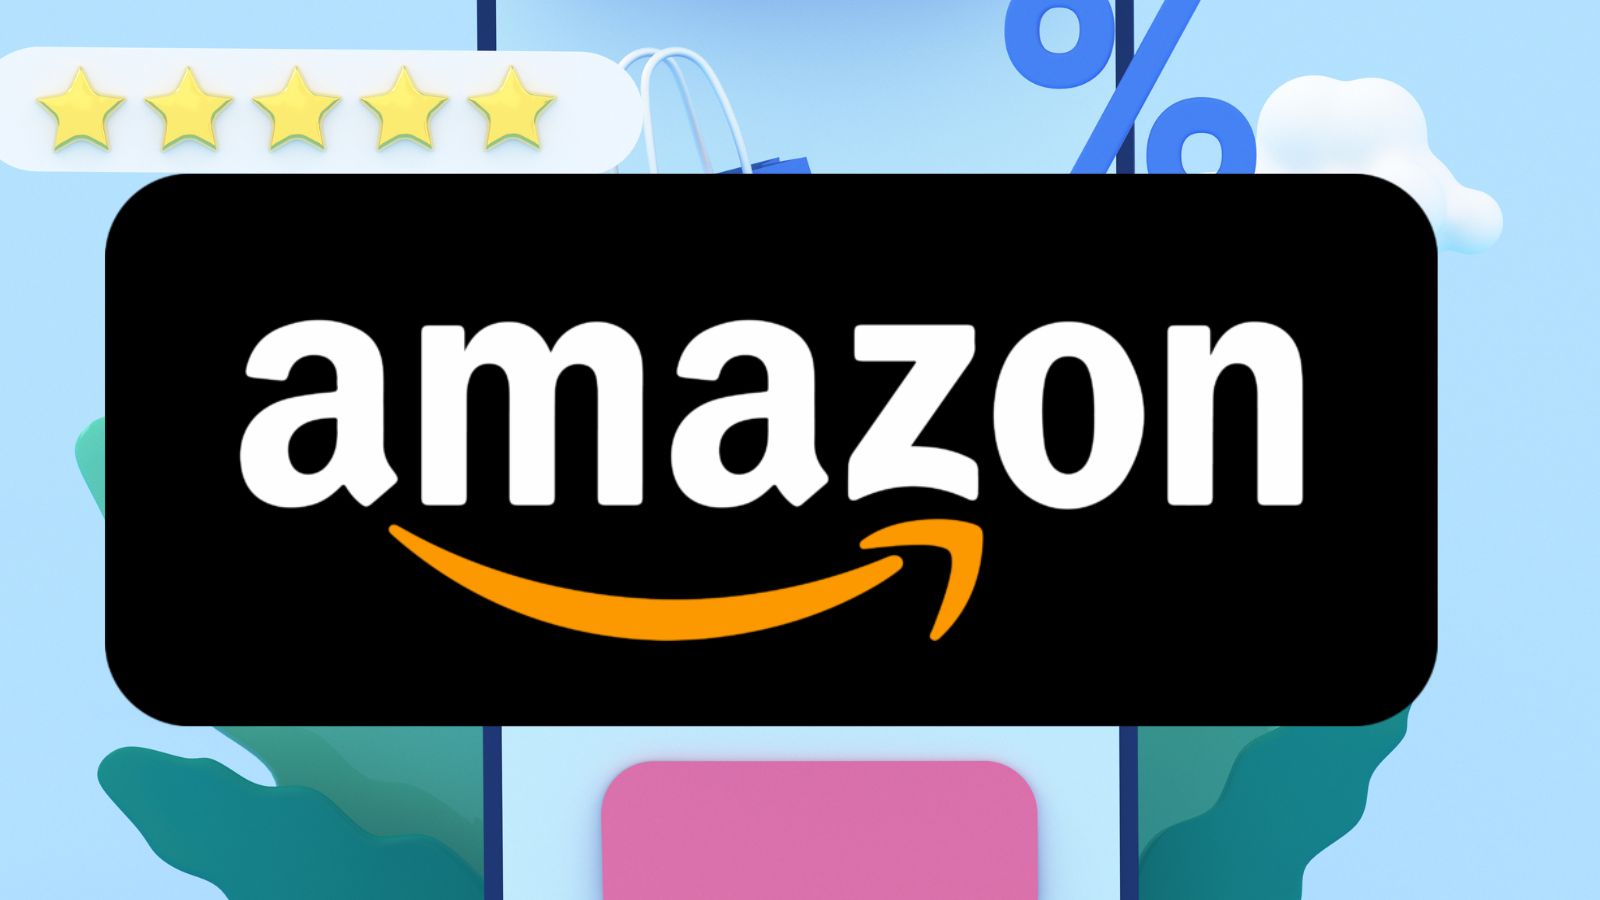 Amazon IMPAZZITA: oggi GRATIS in regalo gli smartphone